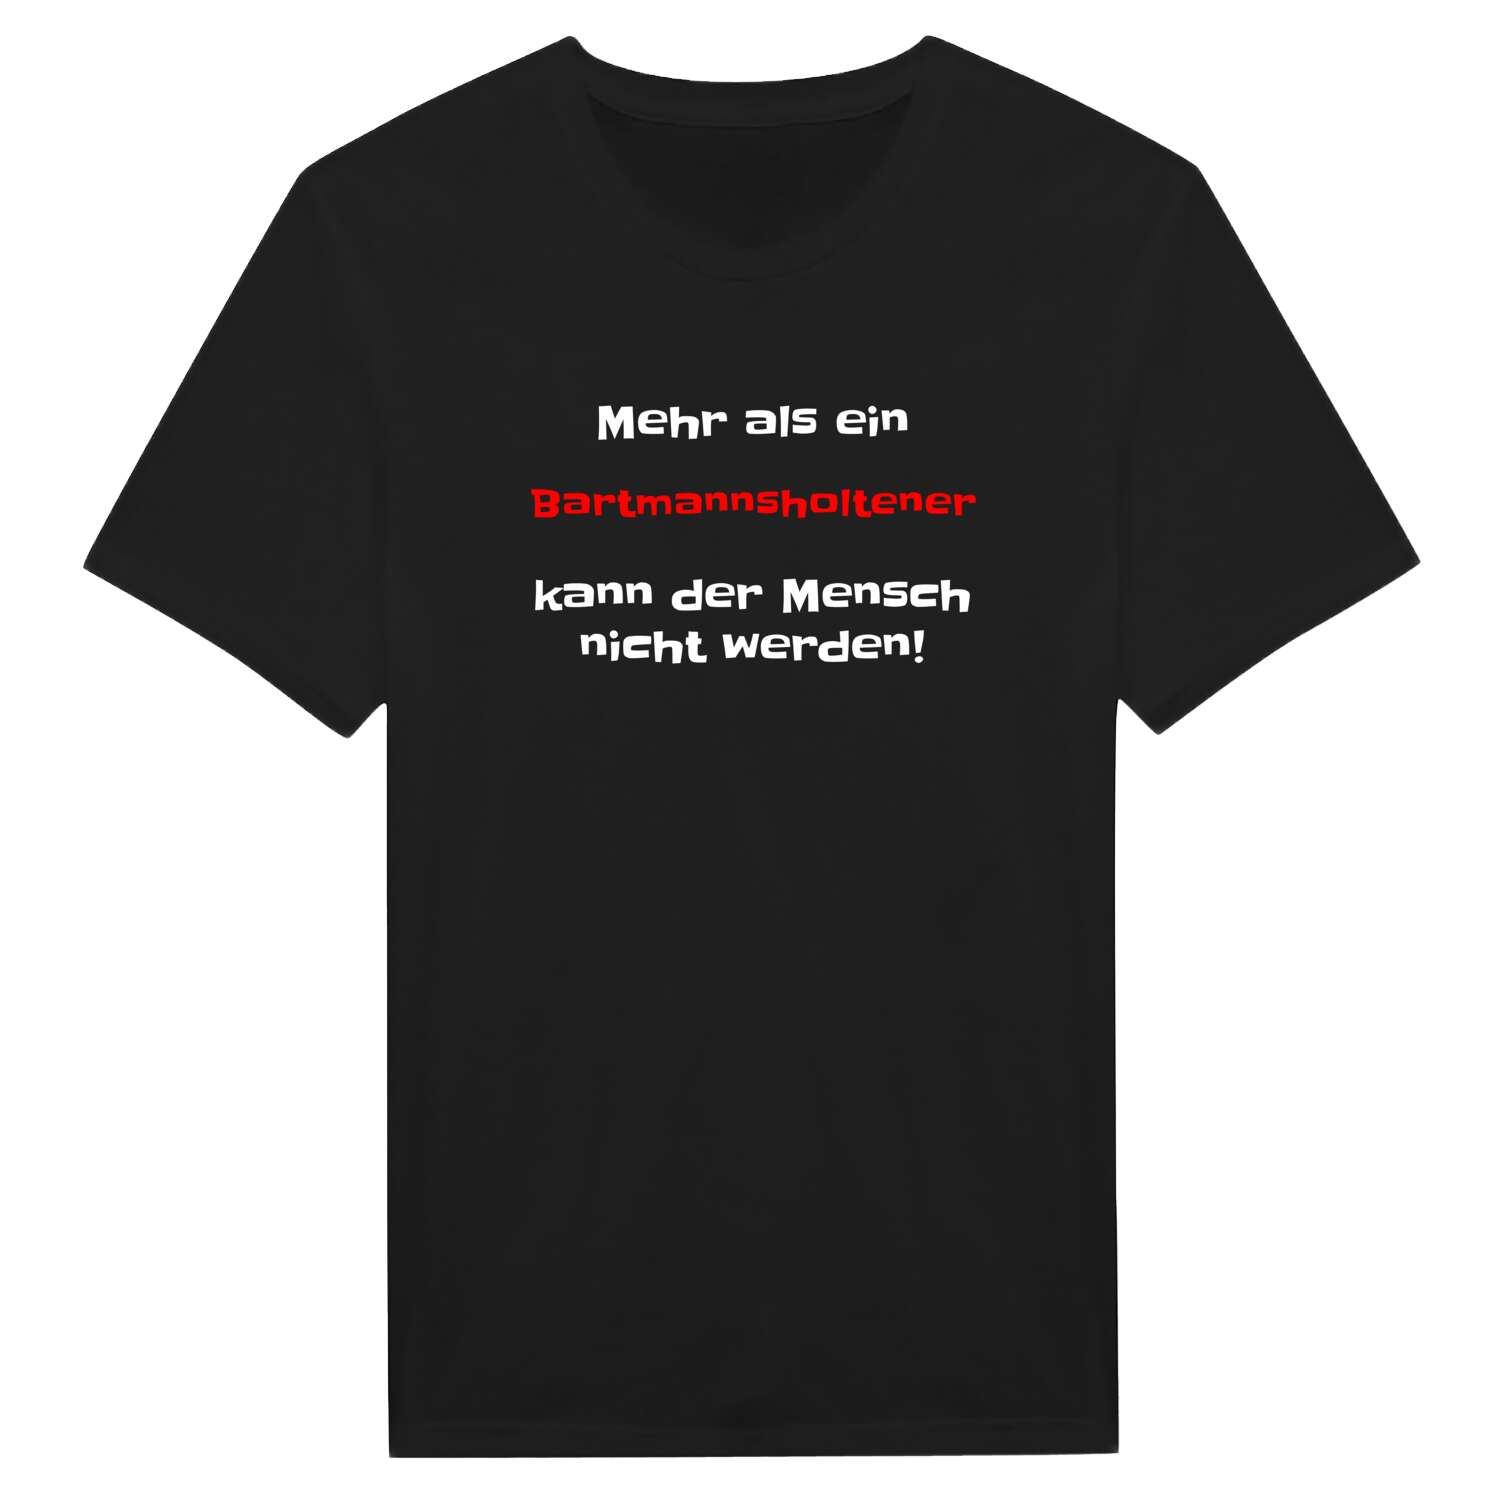 Bartmannsholte T-Shirt »Mehr als ein«